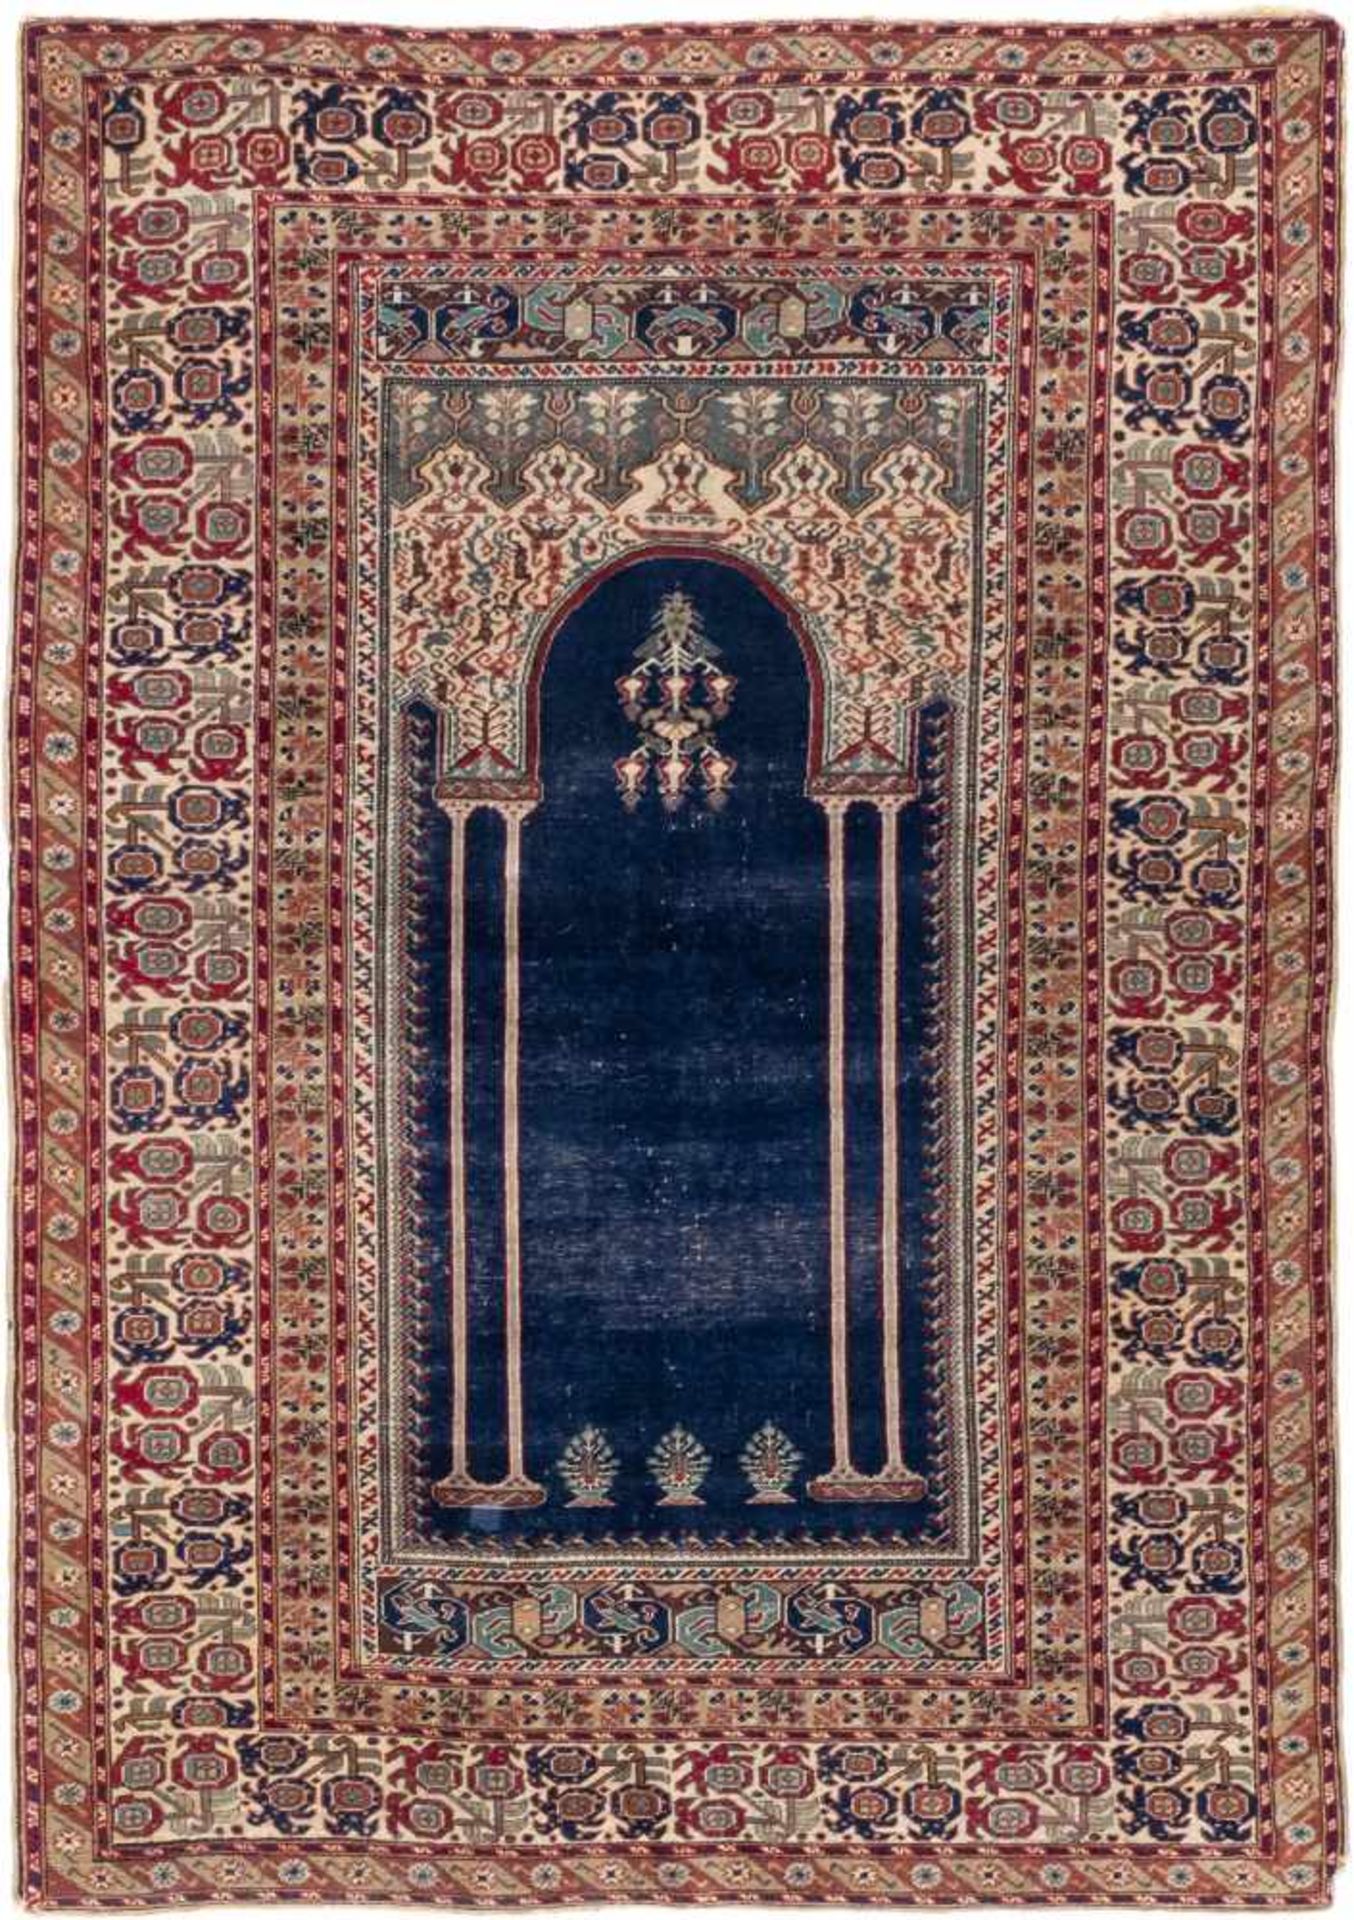 KAYERSI Türkei, um 1900174 x 122 cm. Gebrauchsspuren.